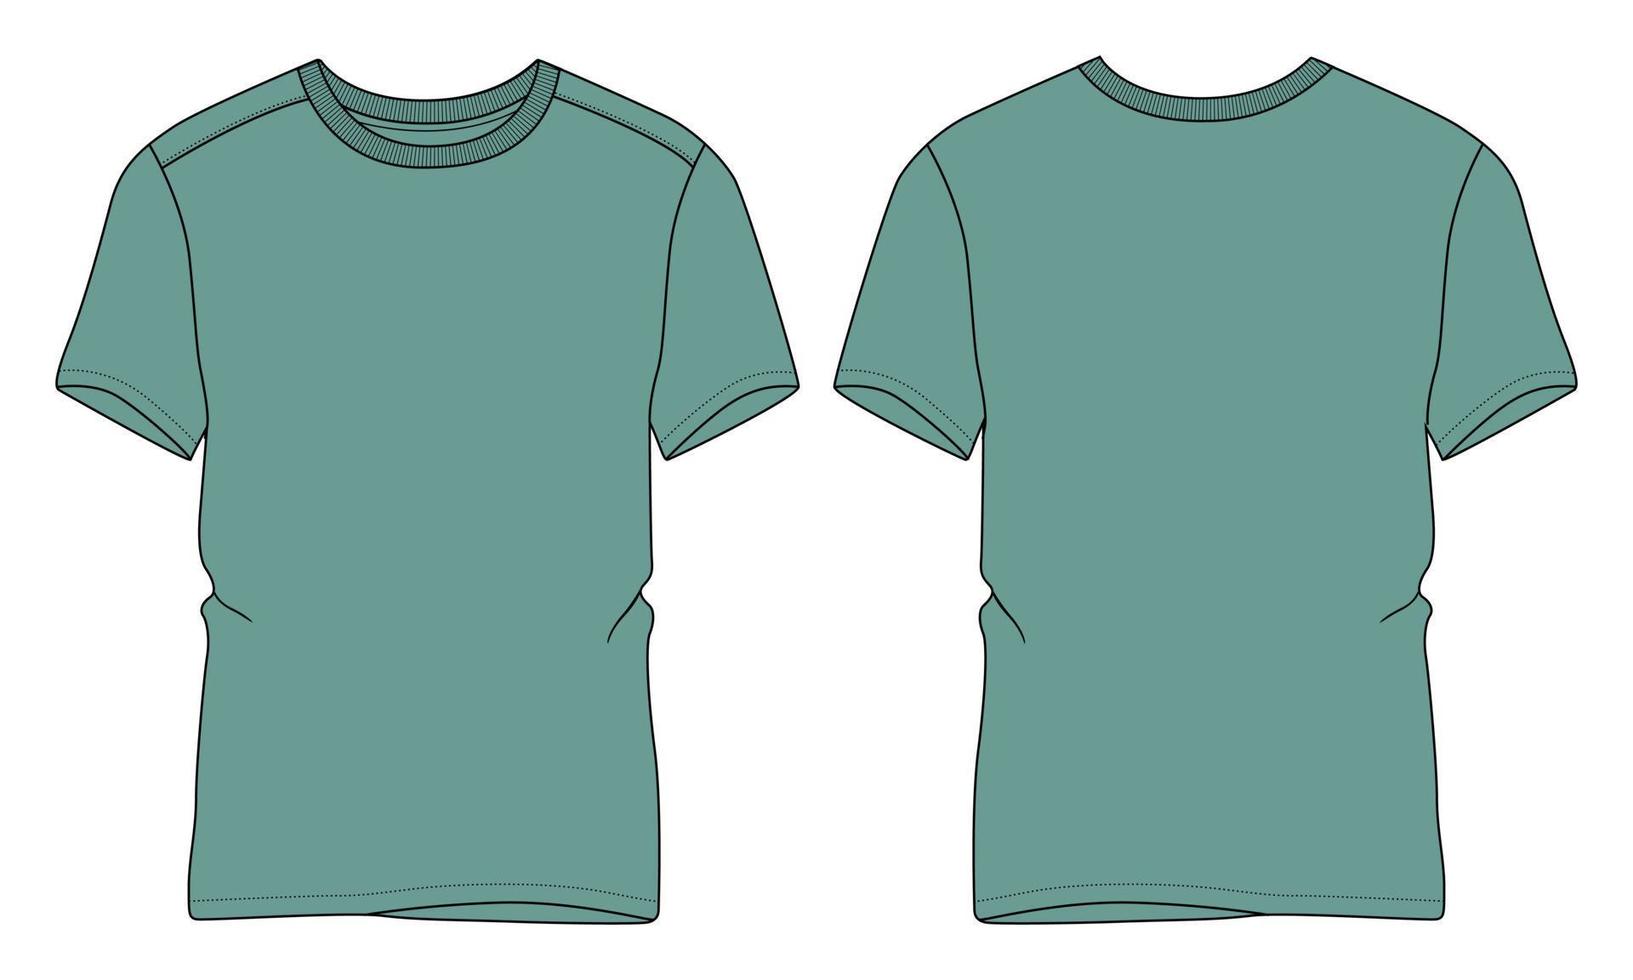 t-shirt a maniche corte tecnica moda schizzo piatto illustrazione vettoriale modello di colore rosso